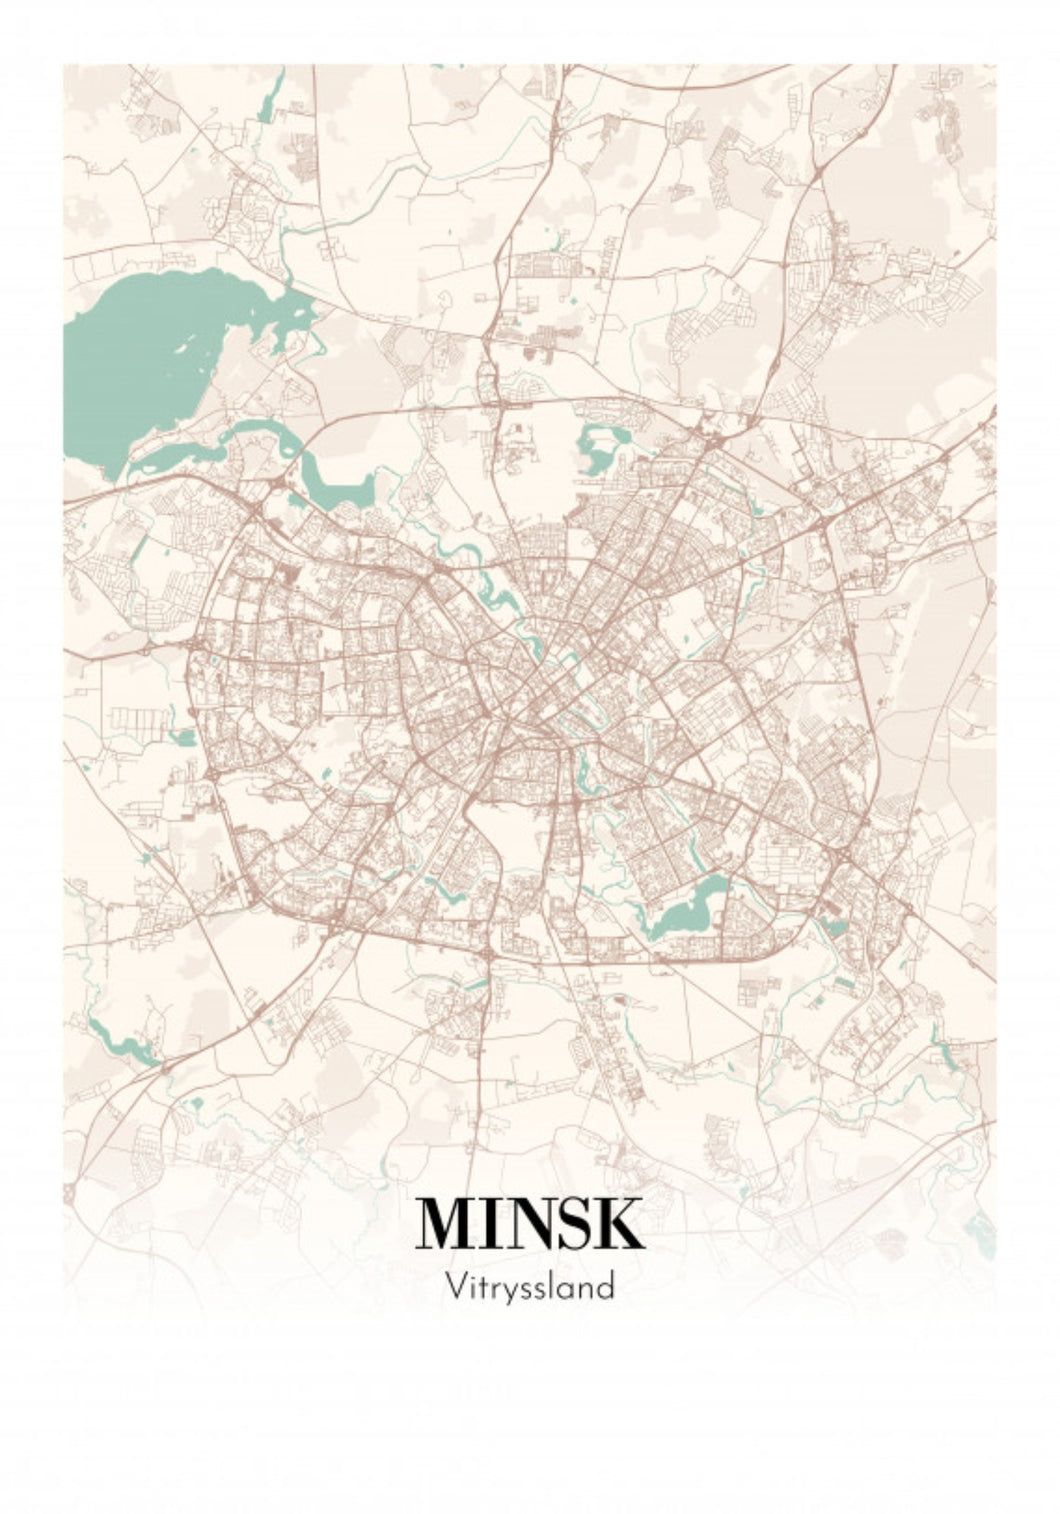 Minsk - Vitryssland